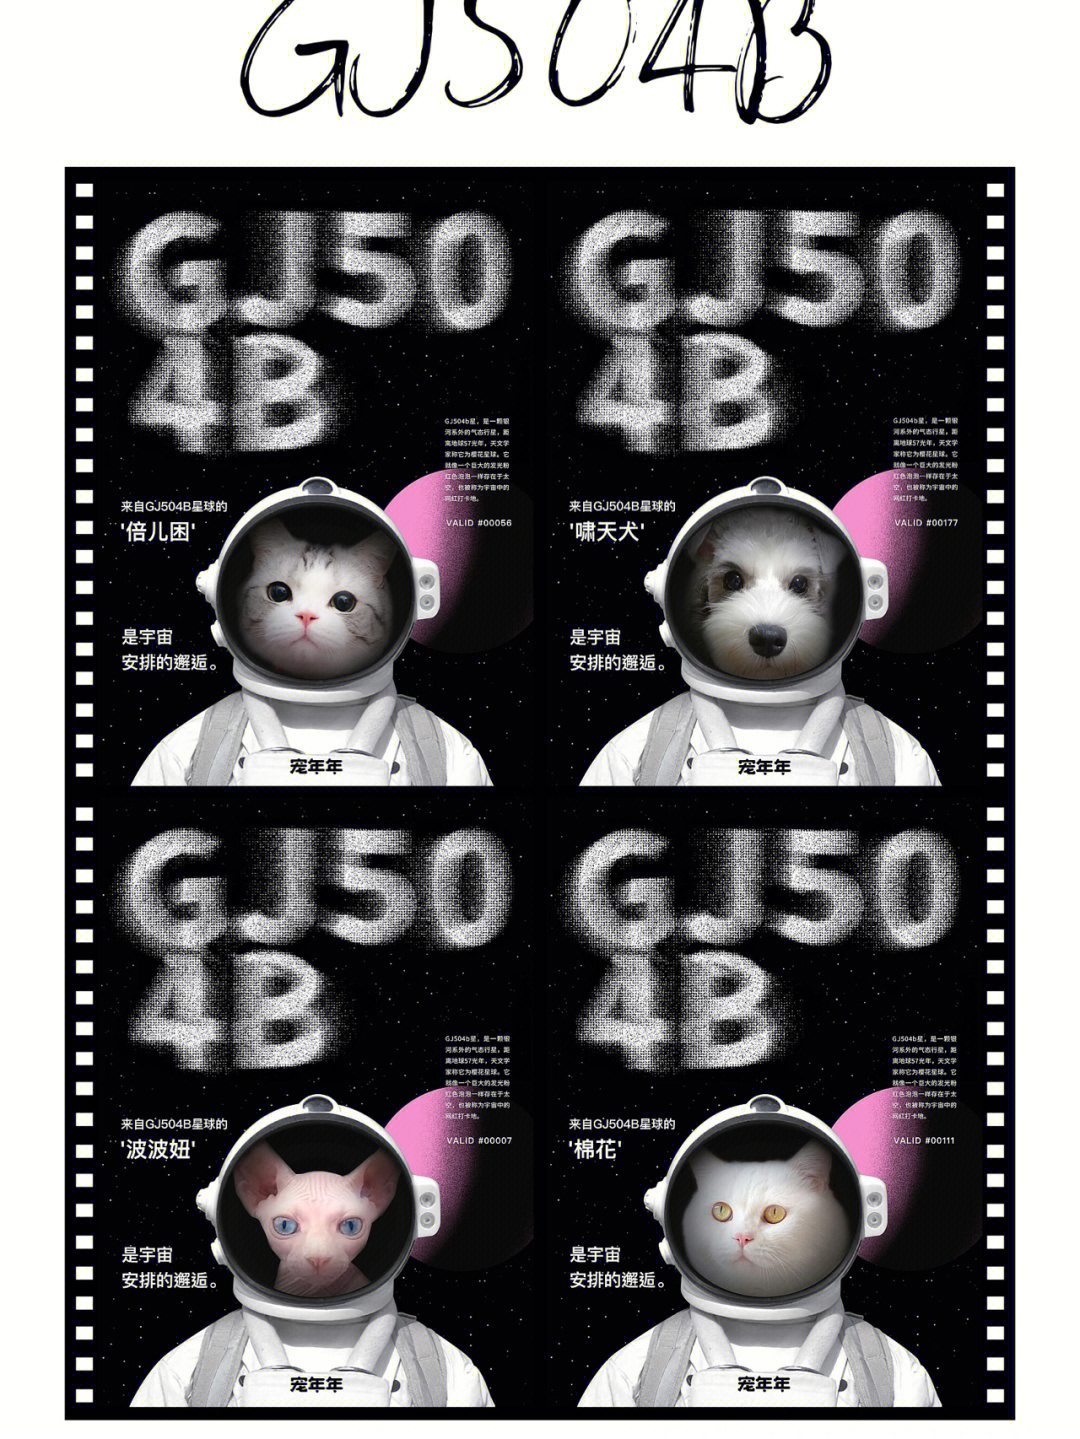 少女星球GJ504b图片